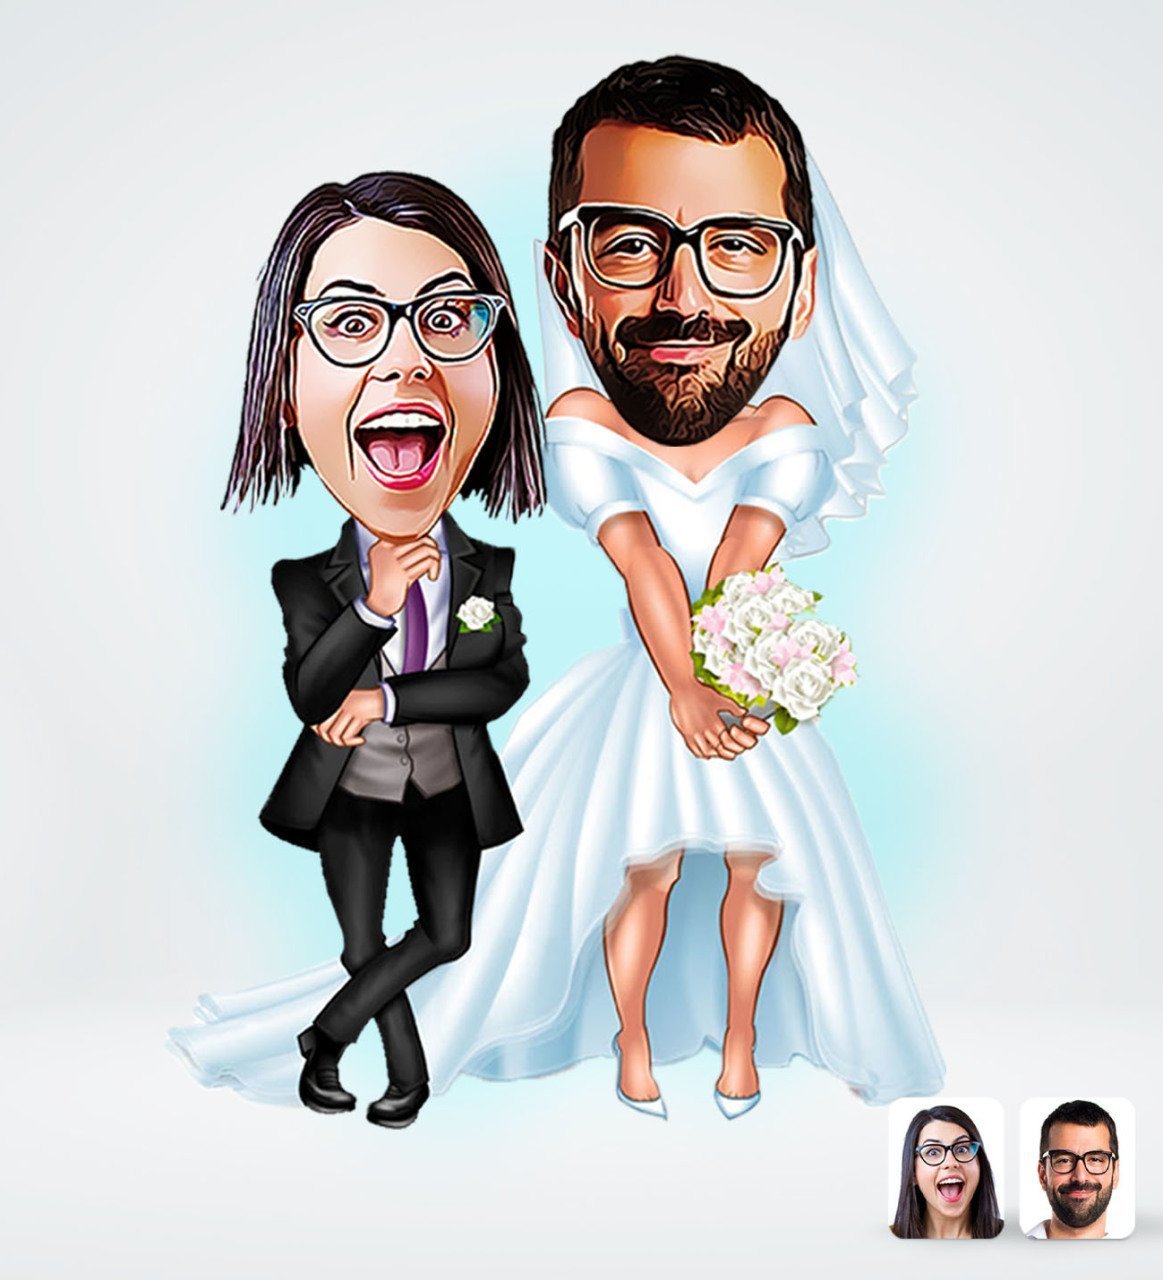 Bryllupspar tema11 (2 personer) - karikaturtegning efter dine fotos